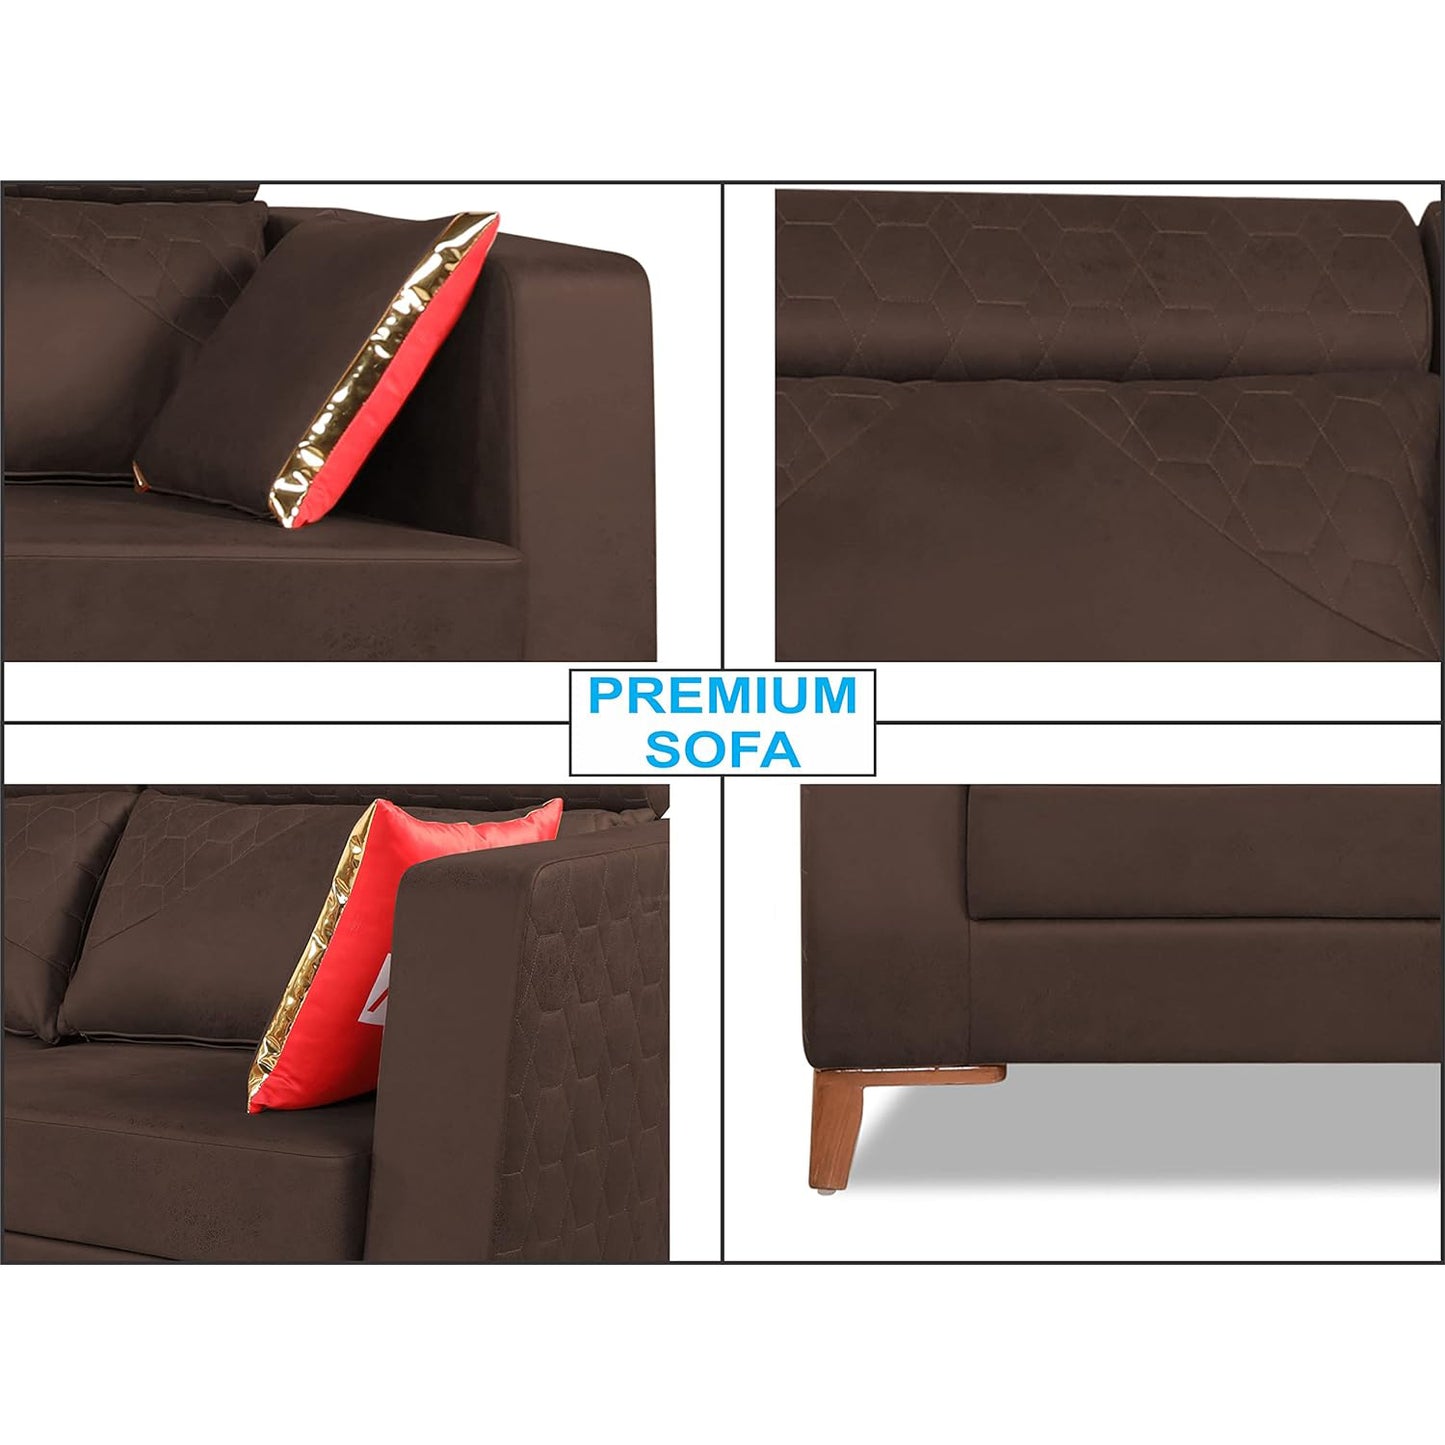 Adorn India Premium Pluto 3 Seater Sofa (Brown)